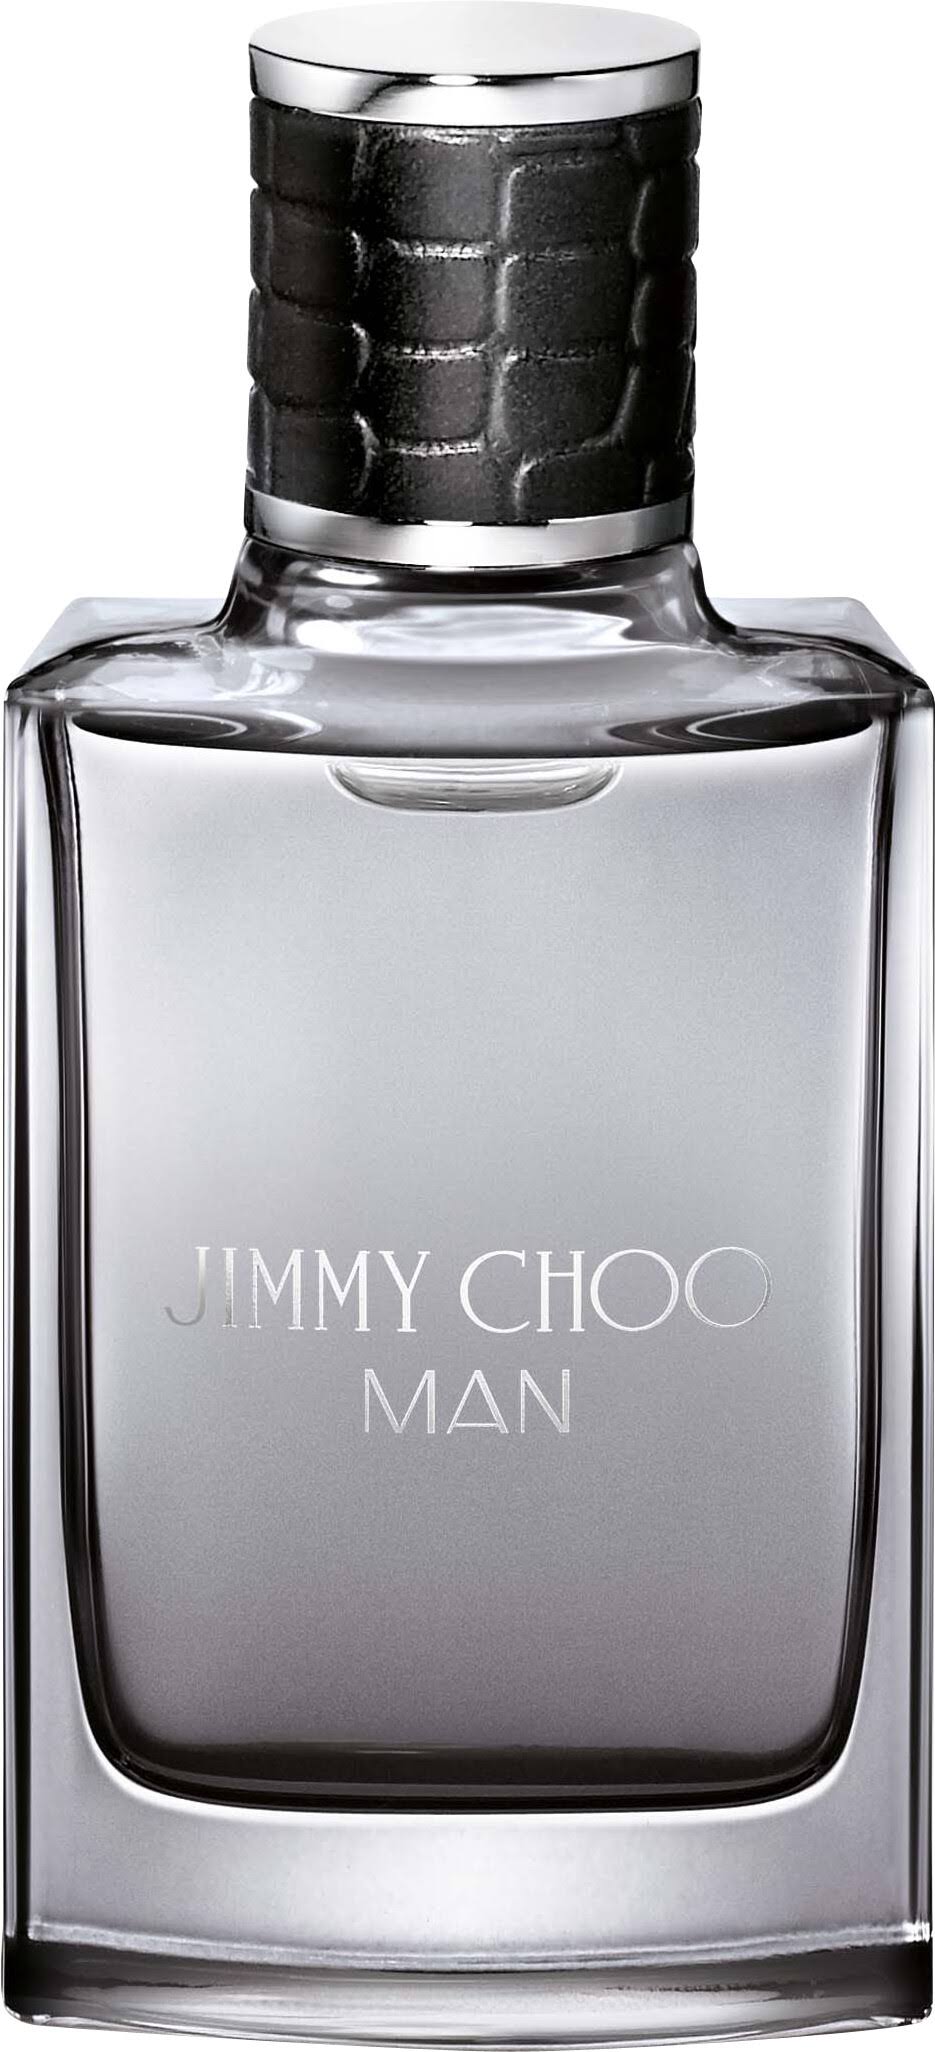 Jimmy Choo Man Eau De Toilette Spray - 30ml